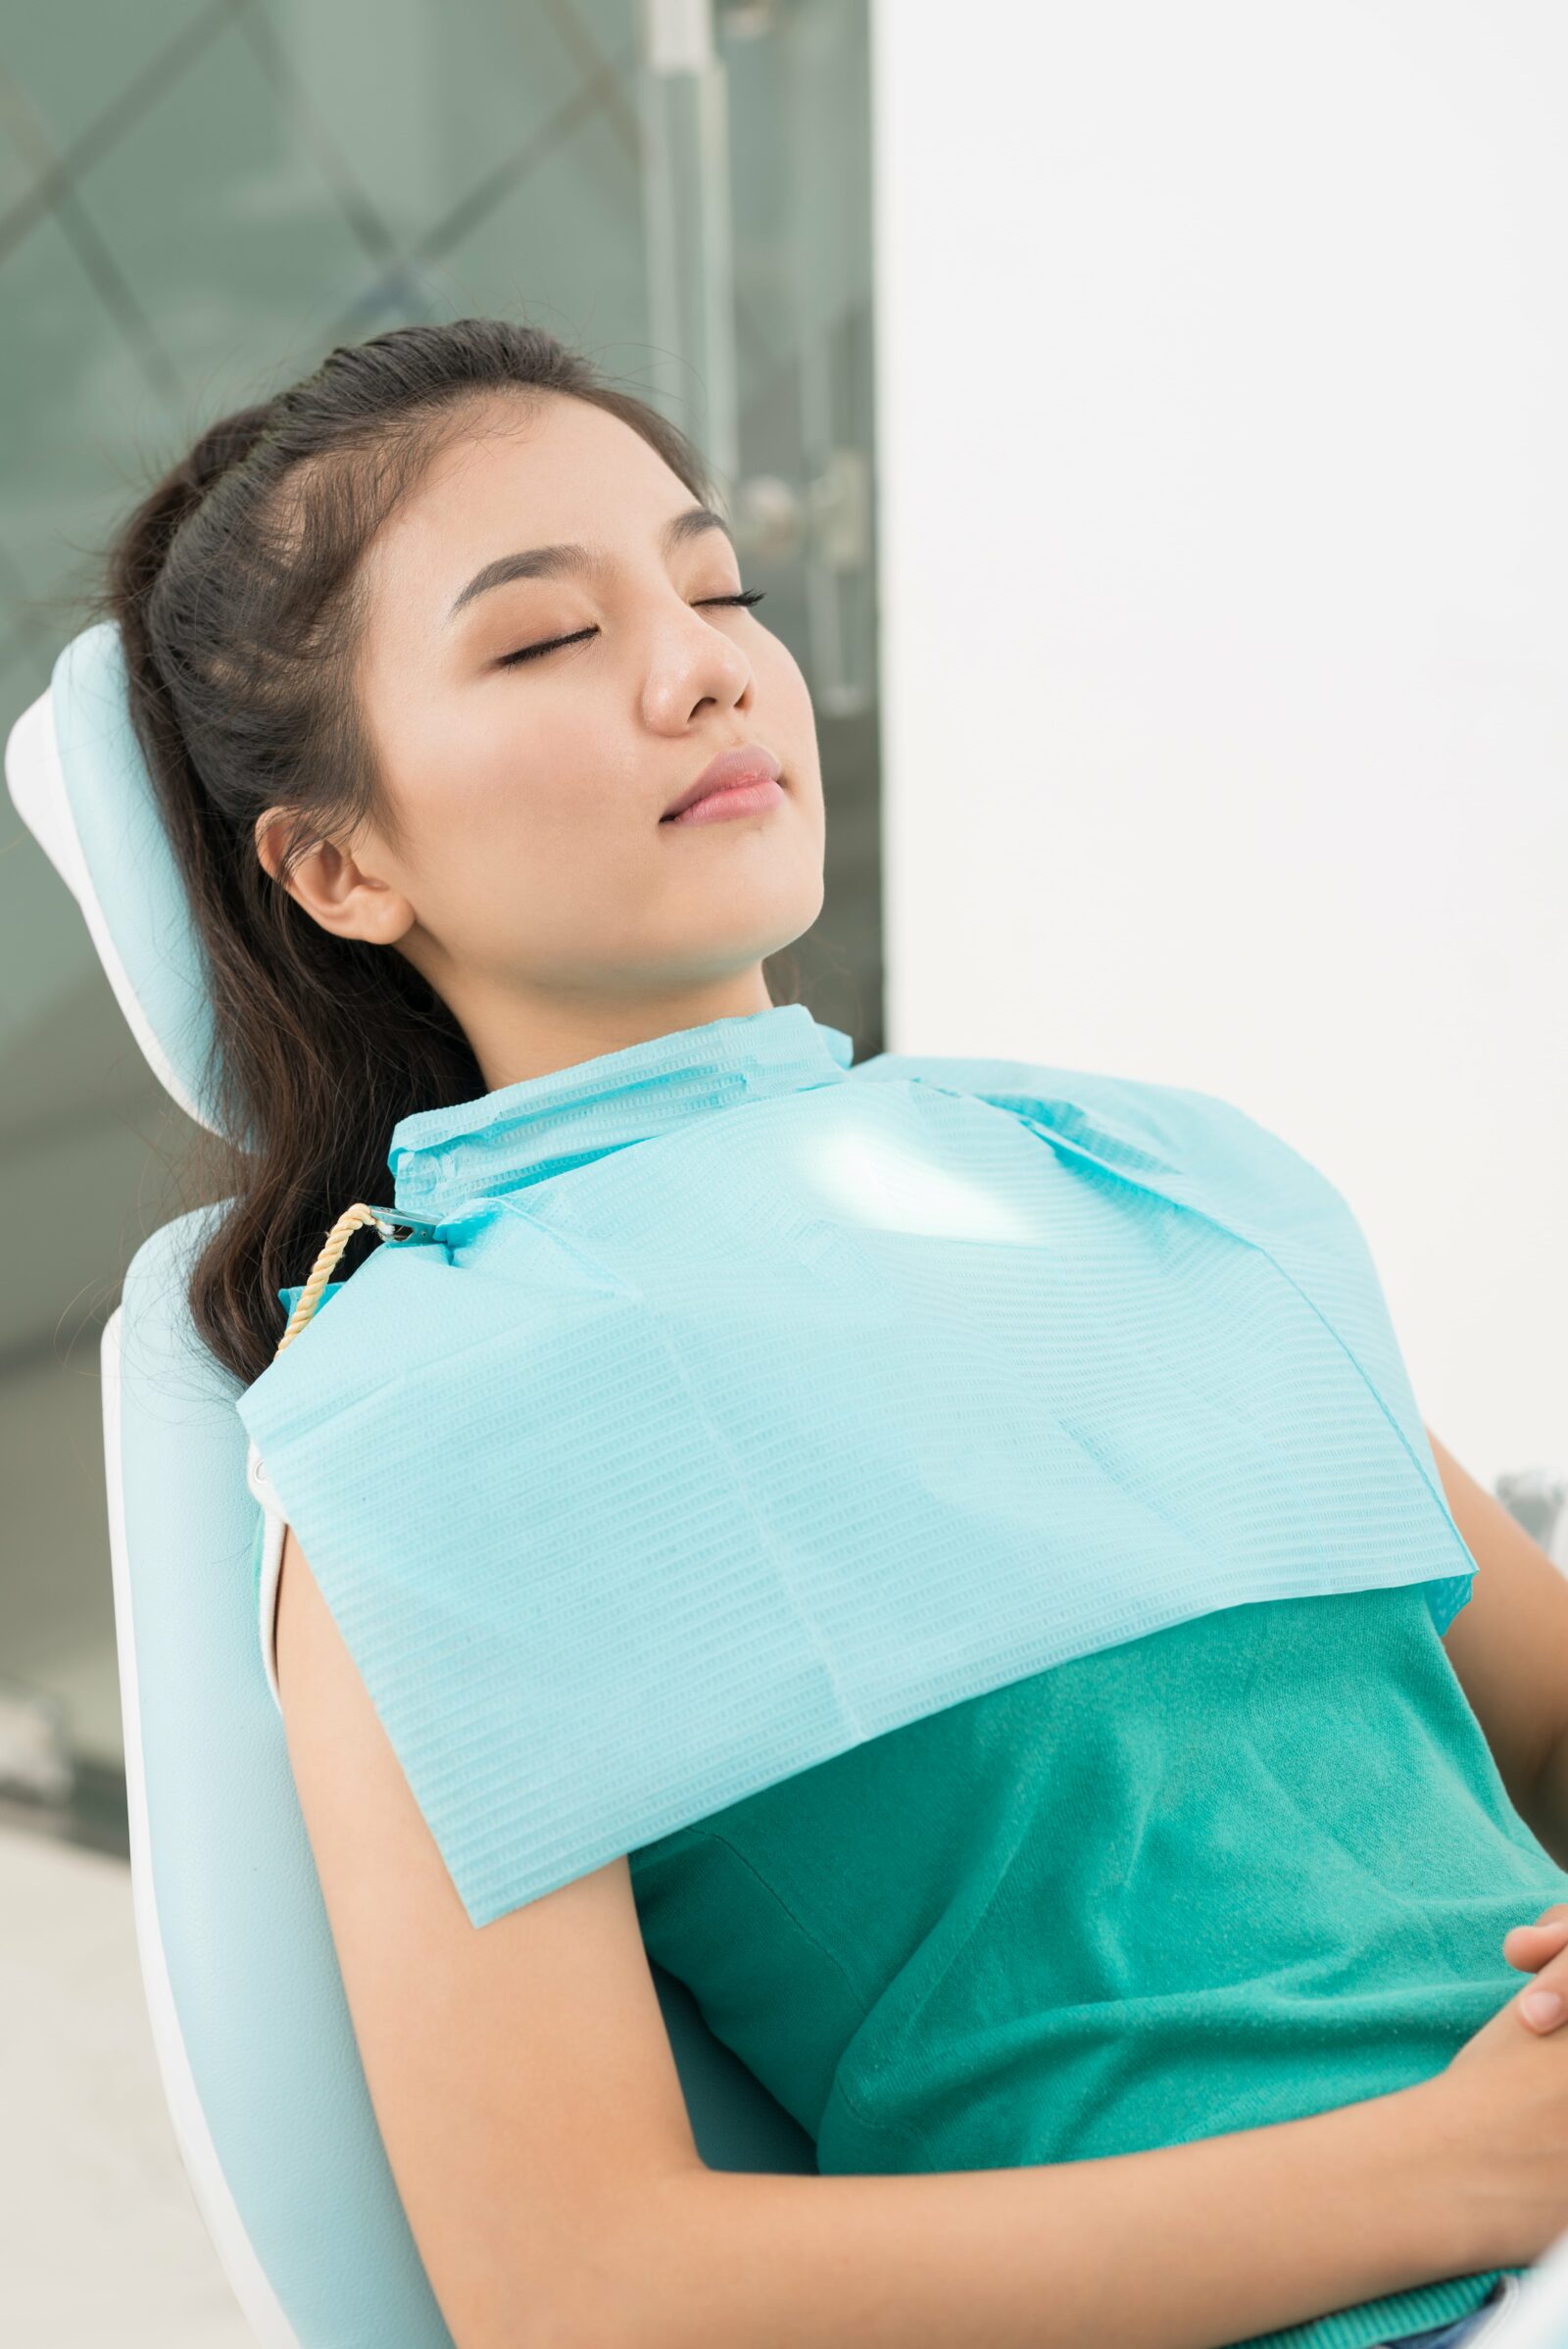 woman sleeping in dental chair